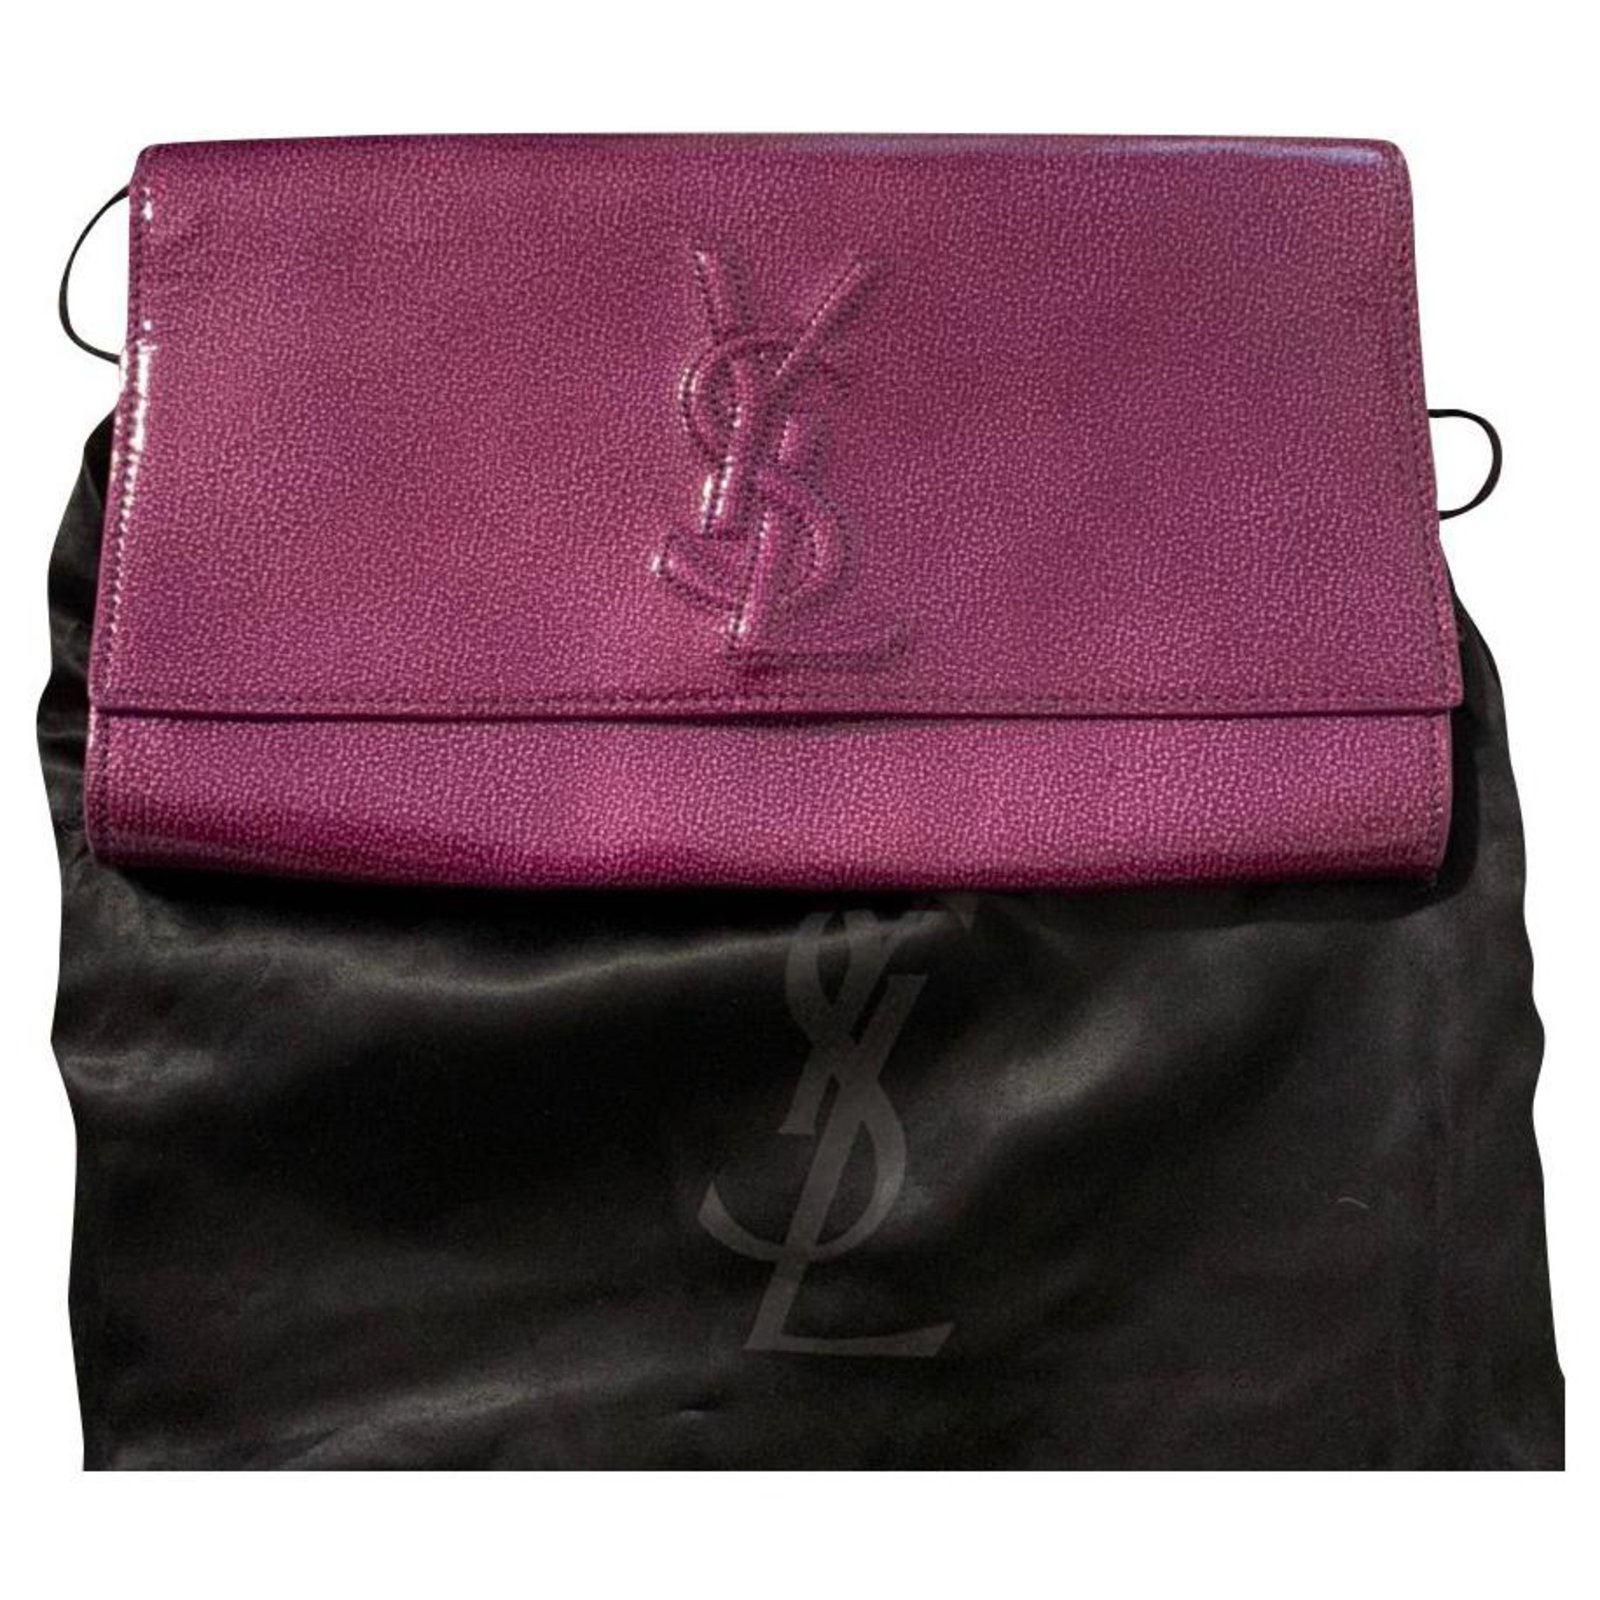 Belle de jour patent leather clutch bag Yves Saint Laurent Pink in